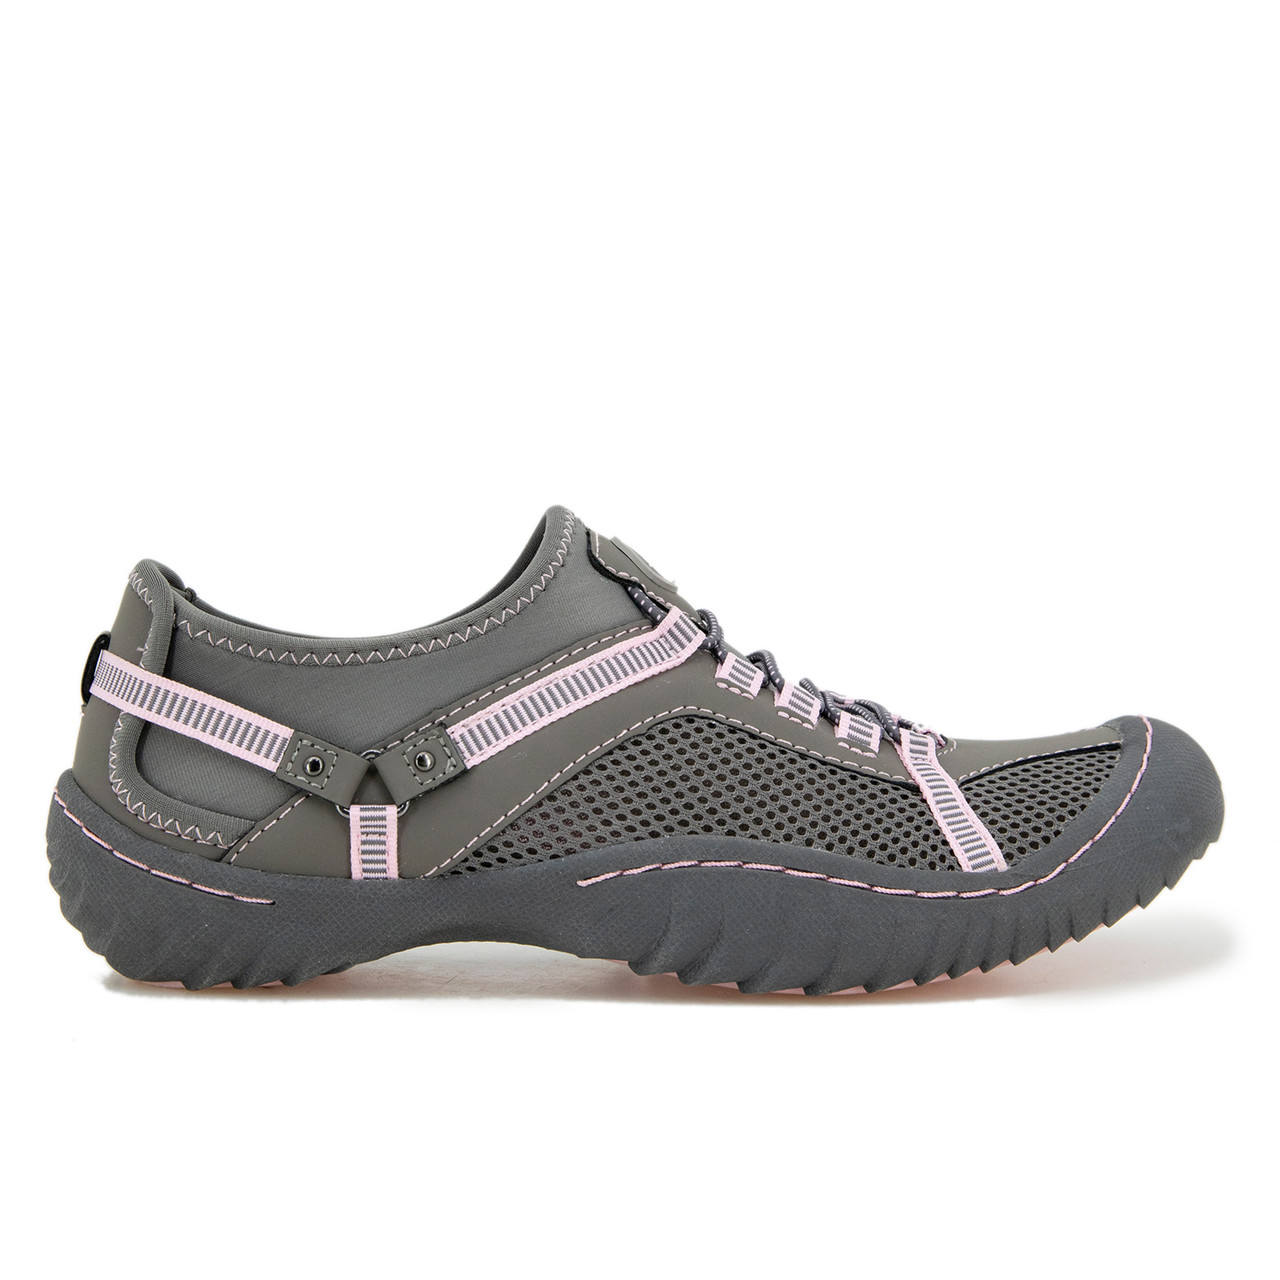 JBU by Jambu Women's Tahoe Water Ready Shoe Grey Petal - Right Foot Shoes